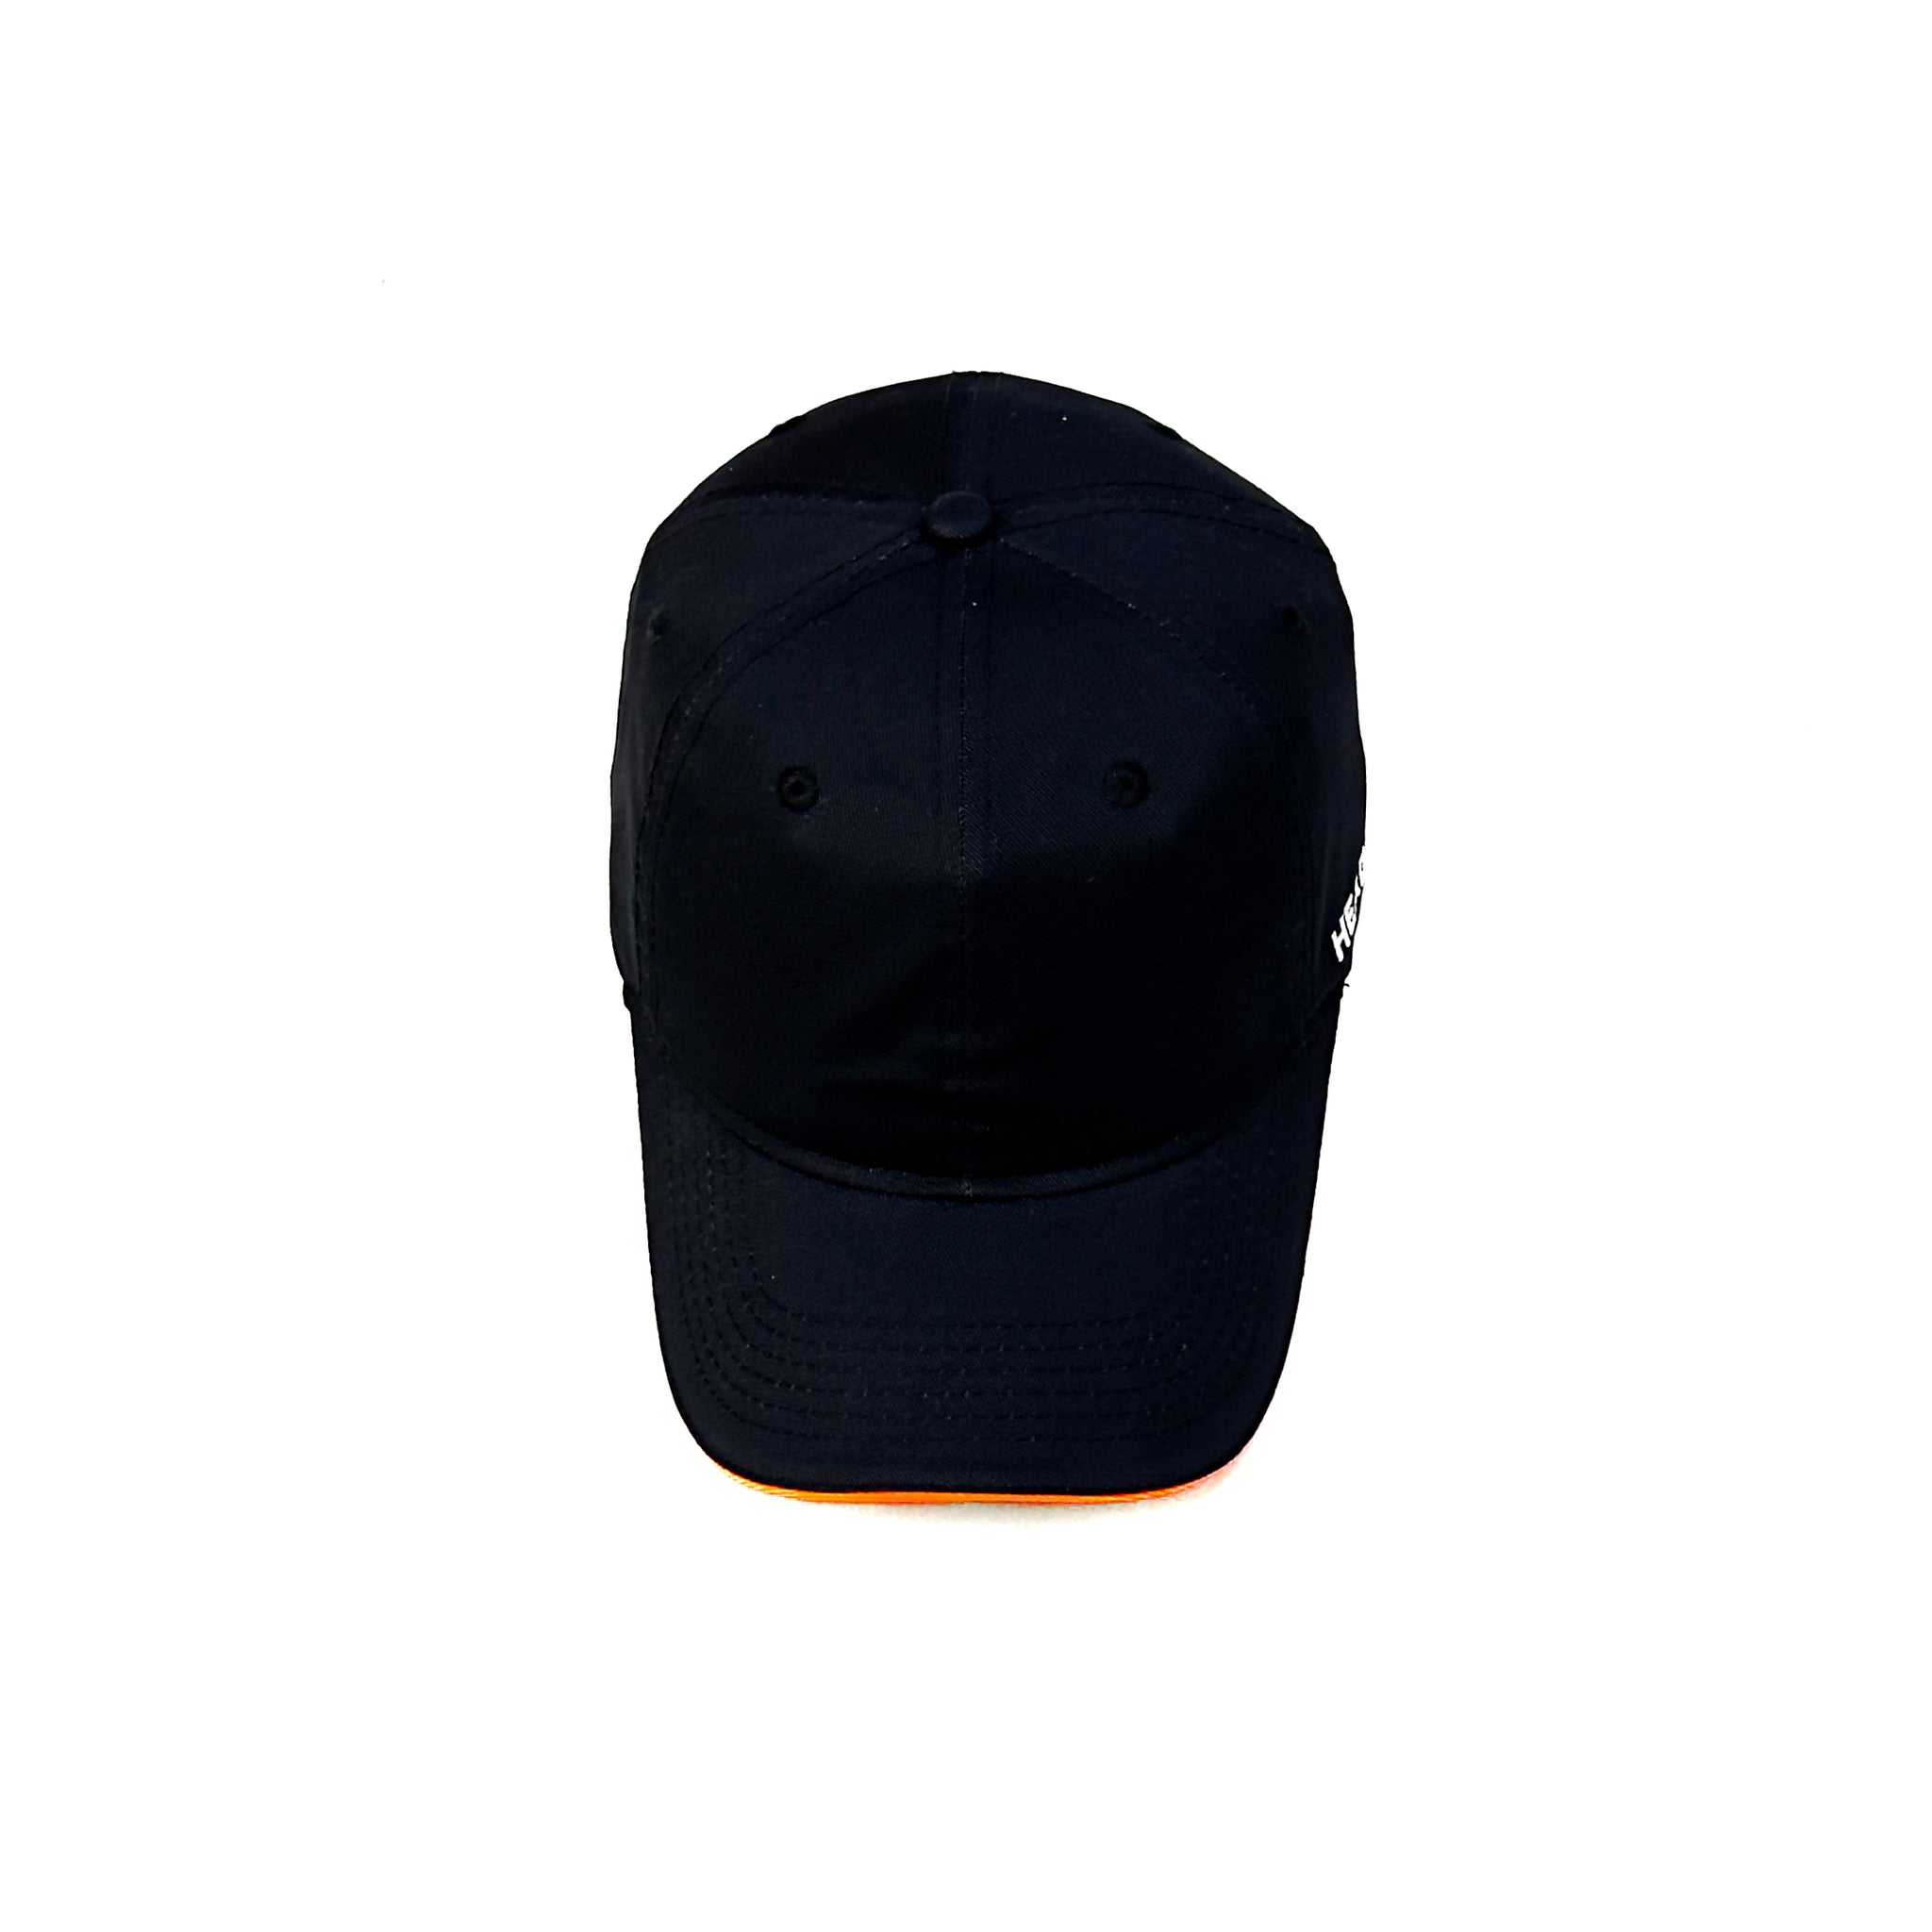 HEAD GEAR BLACK WITH ORANGE SANDWICH CAP